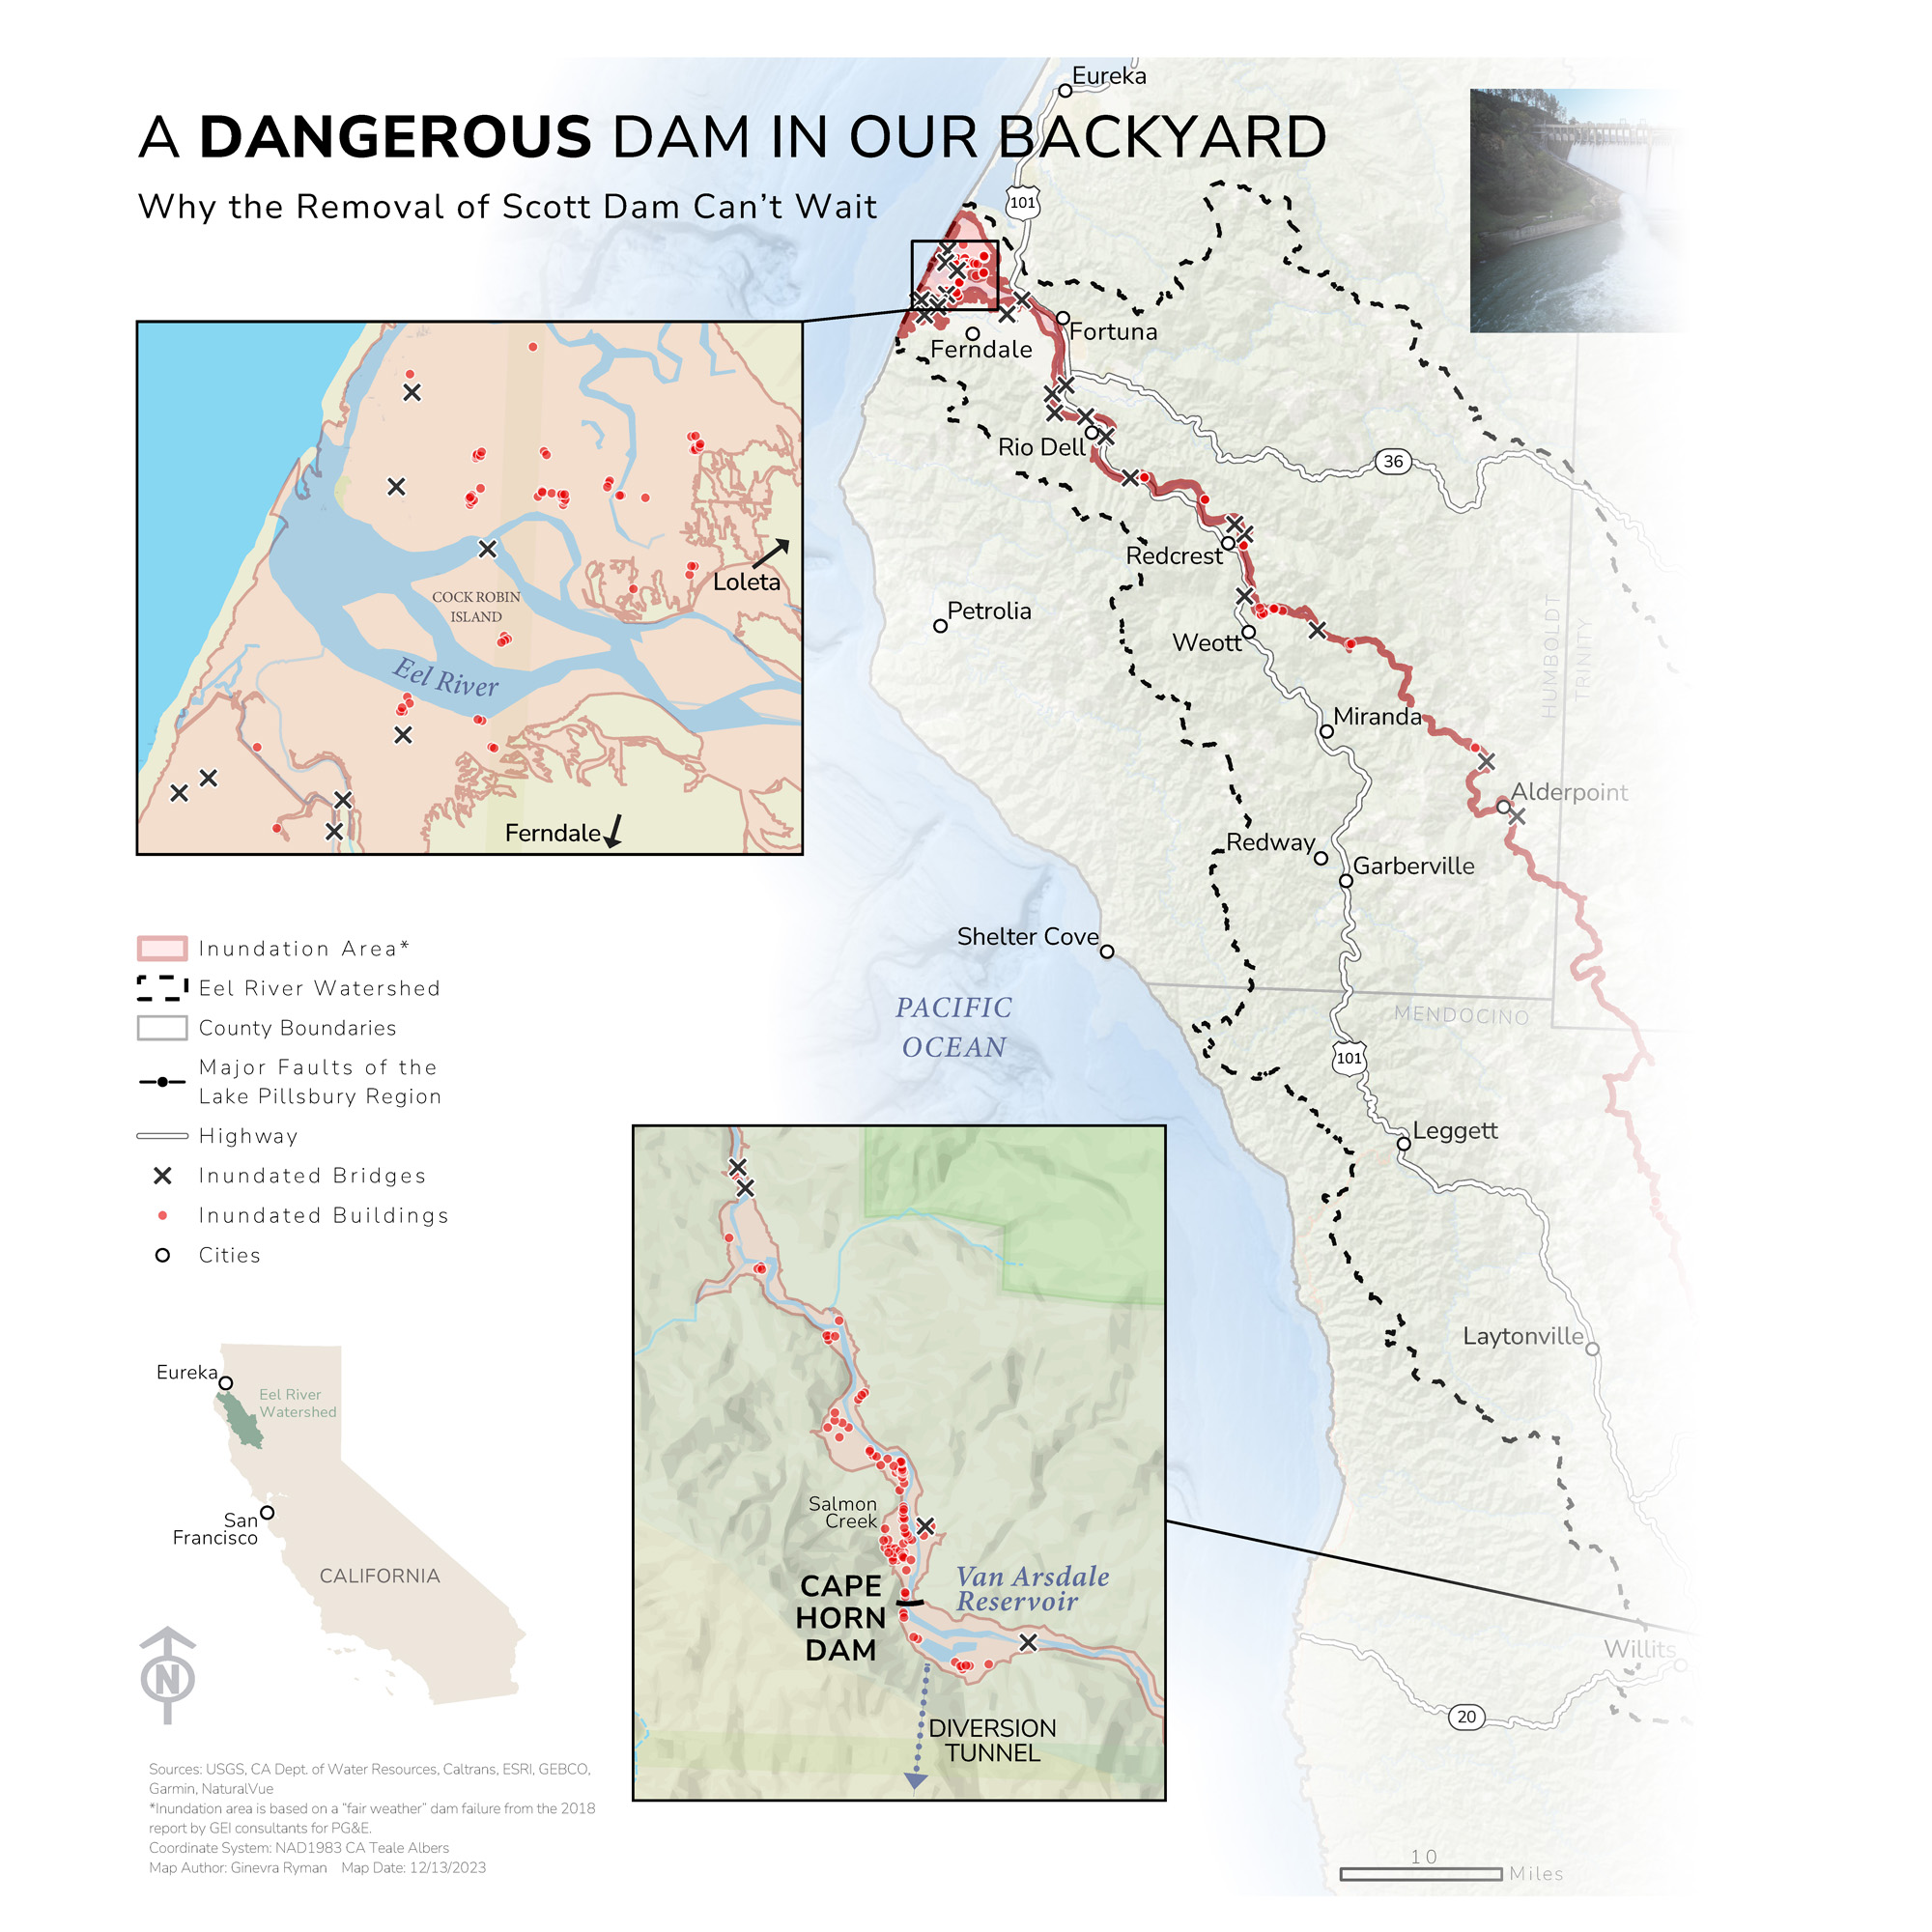 Scott Dam is a dangerous dam in our backyard.